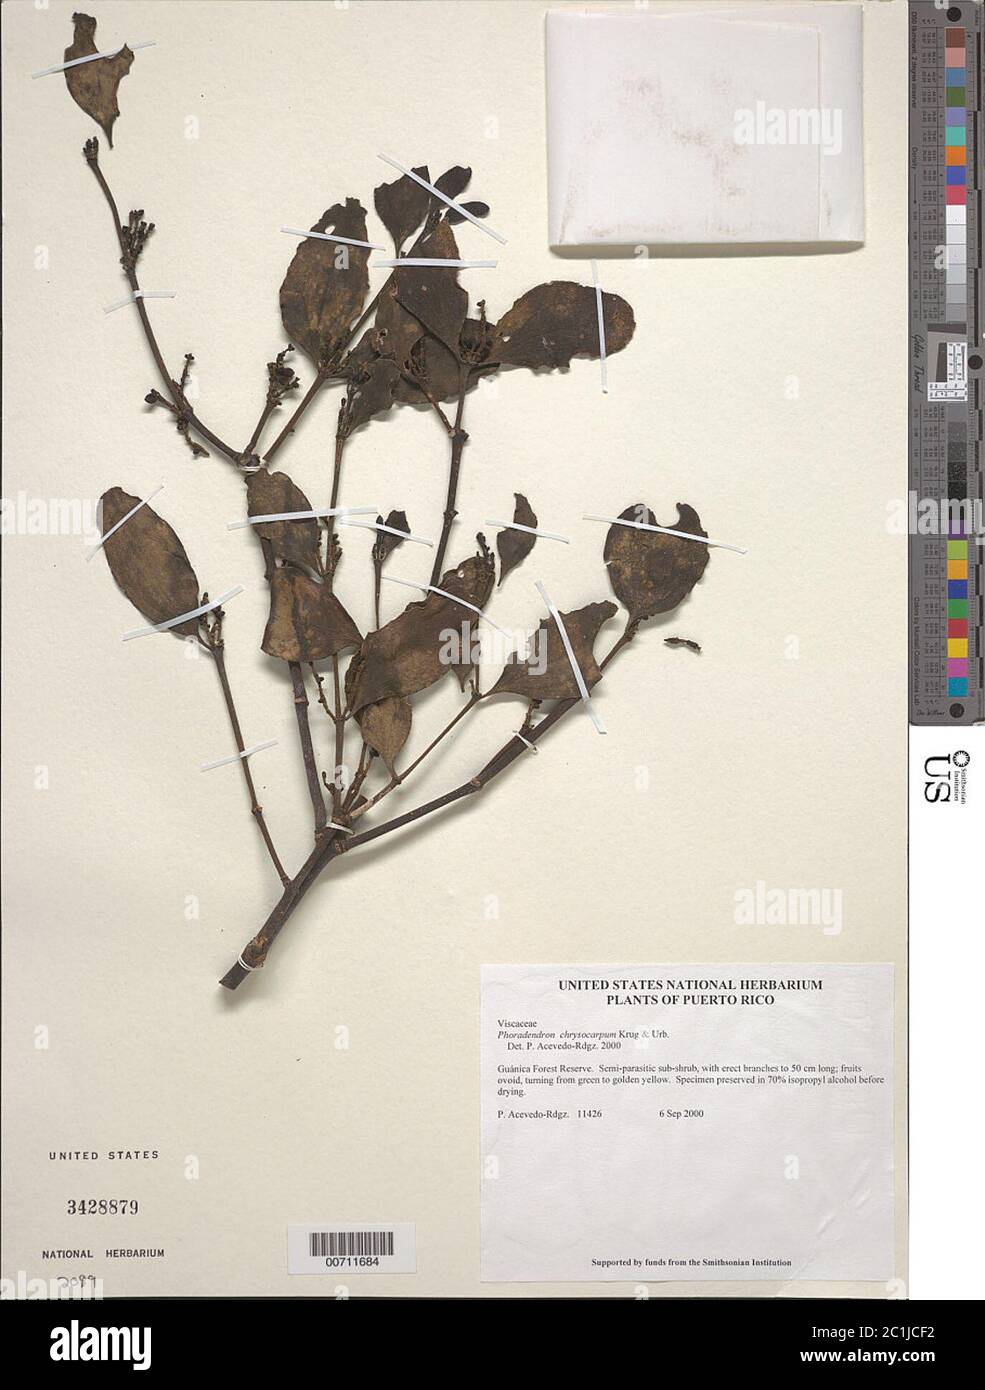 Phoradendron chrysocarpum Krug Urb Phoradendron chrysocarpum Krug Urb. Stock Photo